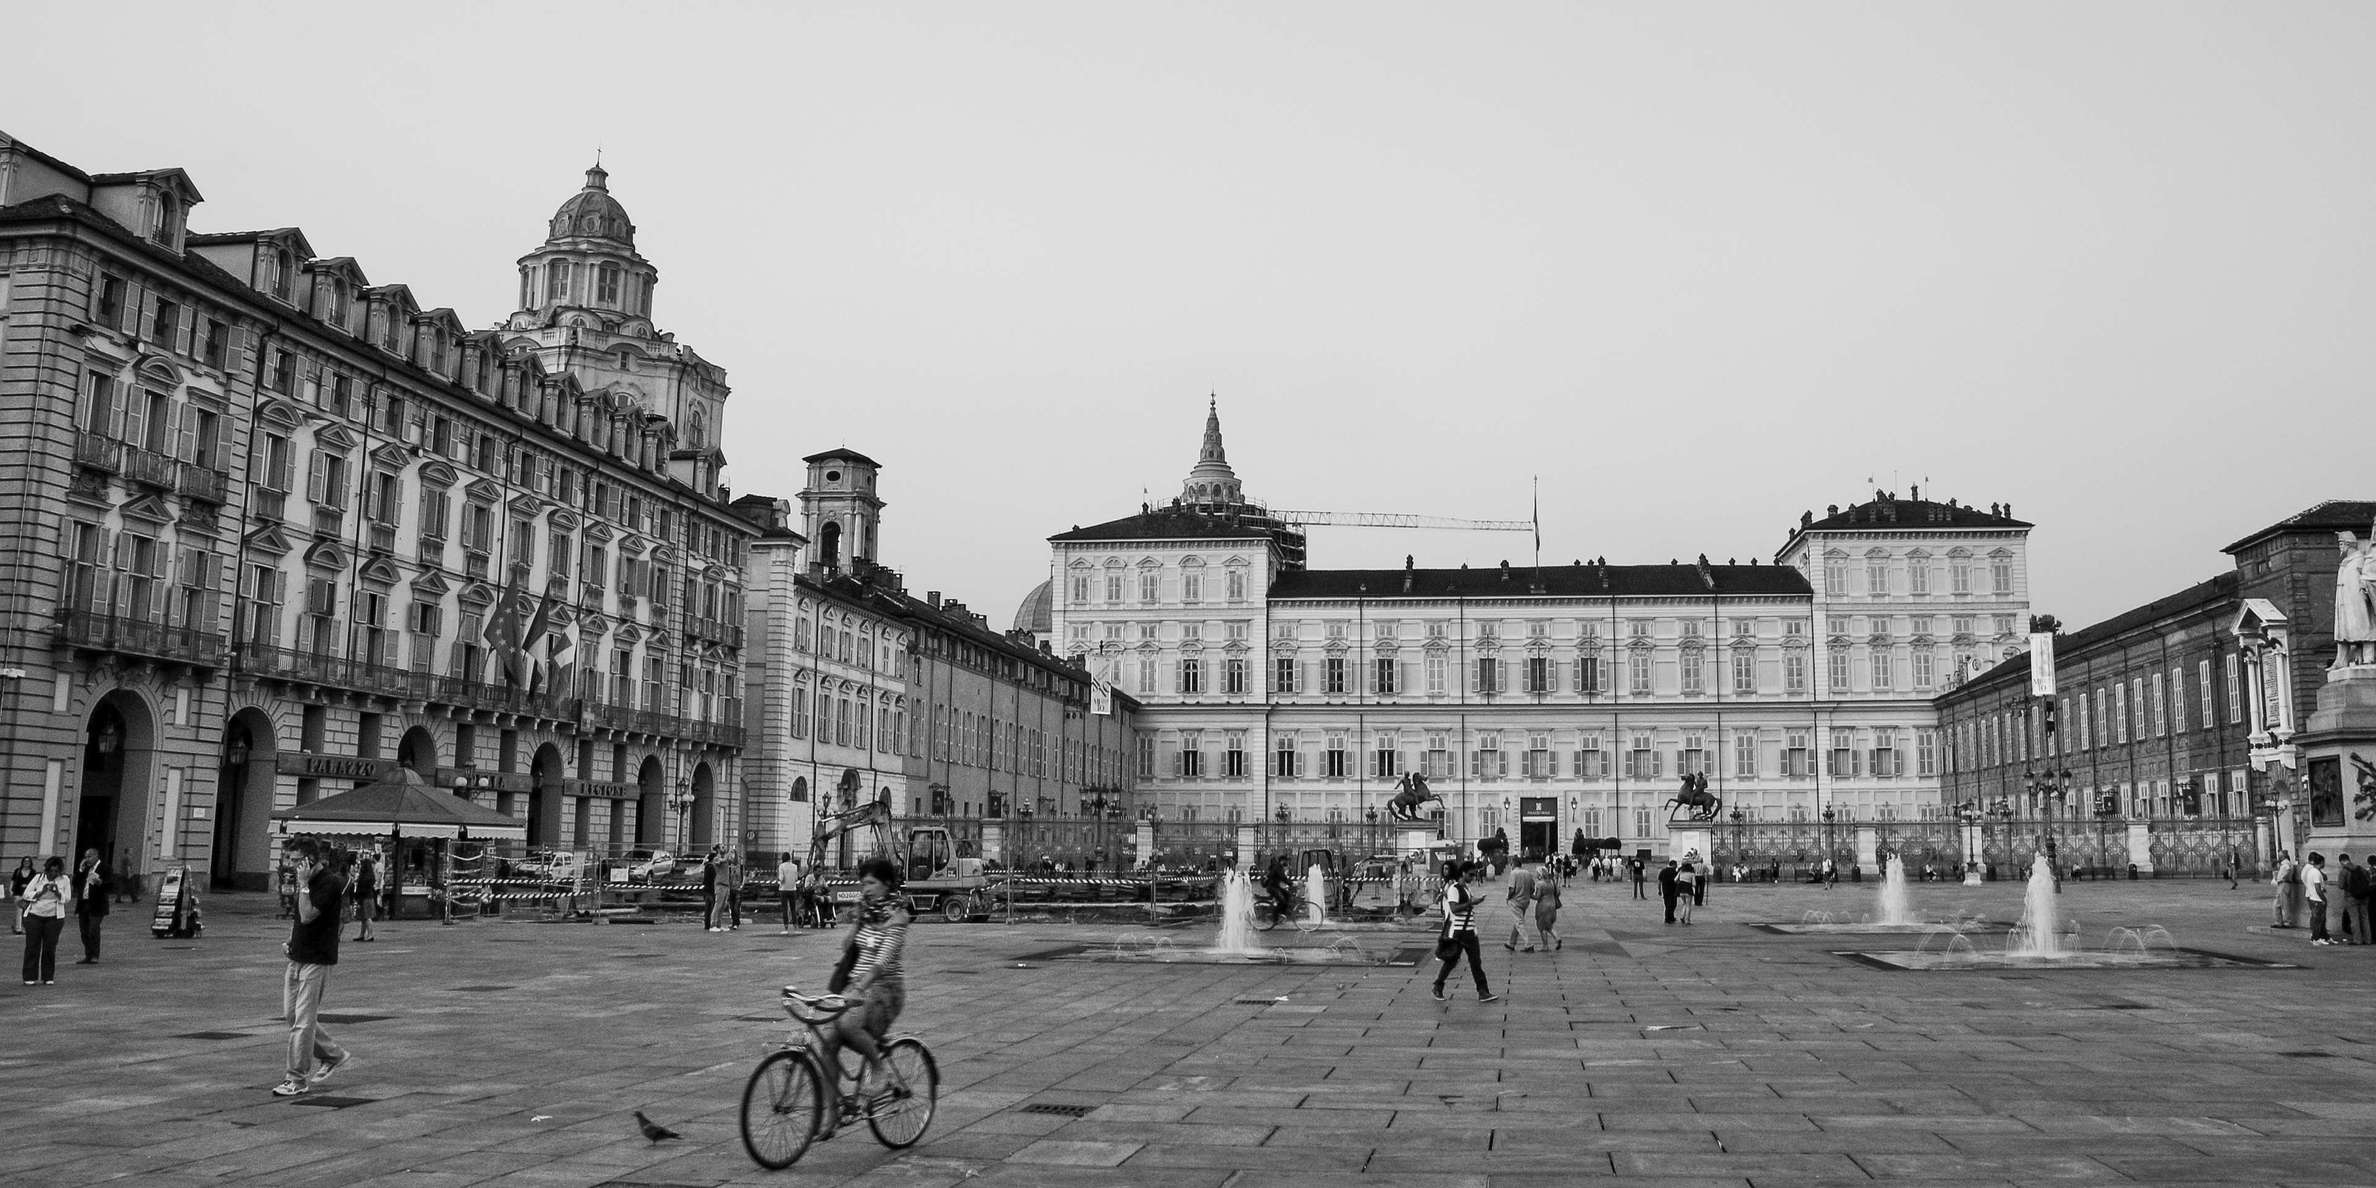 Torino | Piazza Castello and Palazzo Reale